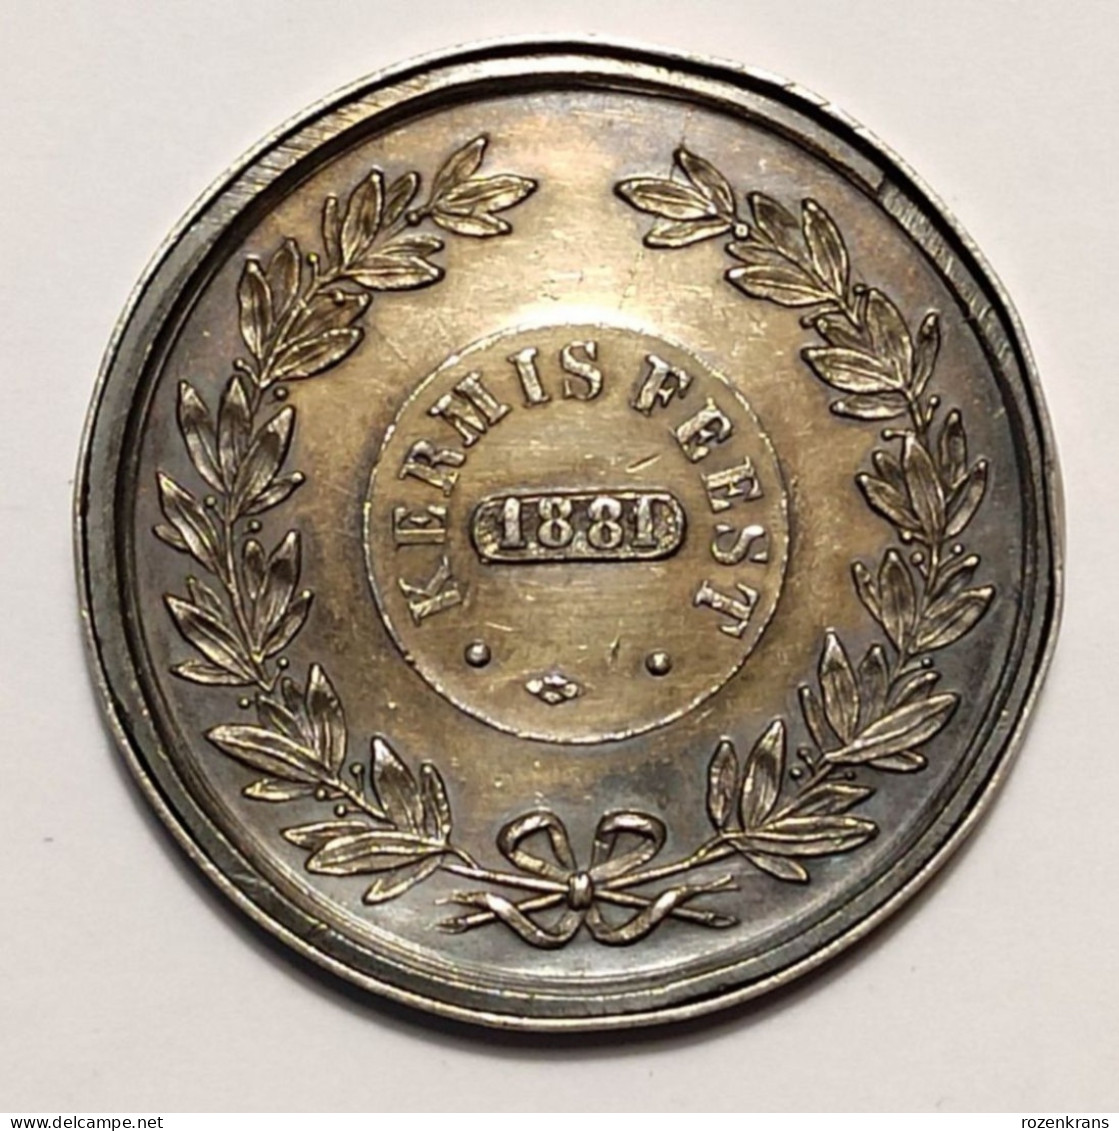 Oude Medaille Ancienne Kermis Feest Stad St. Sint Niklaas Nicolaas Waas Waasland Kermesse 1881 Foire Old Medal - Jetons De Communes